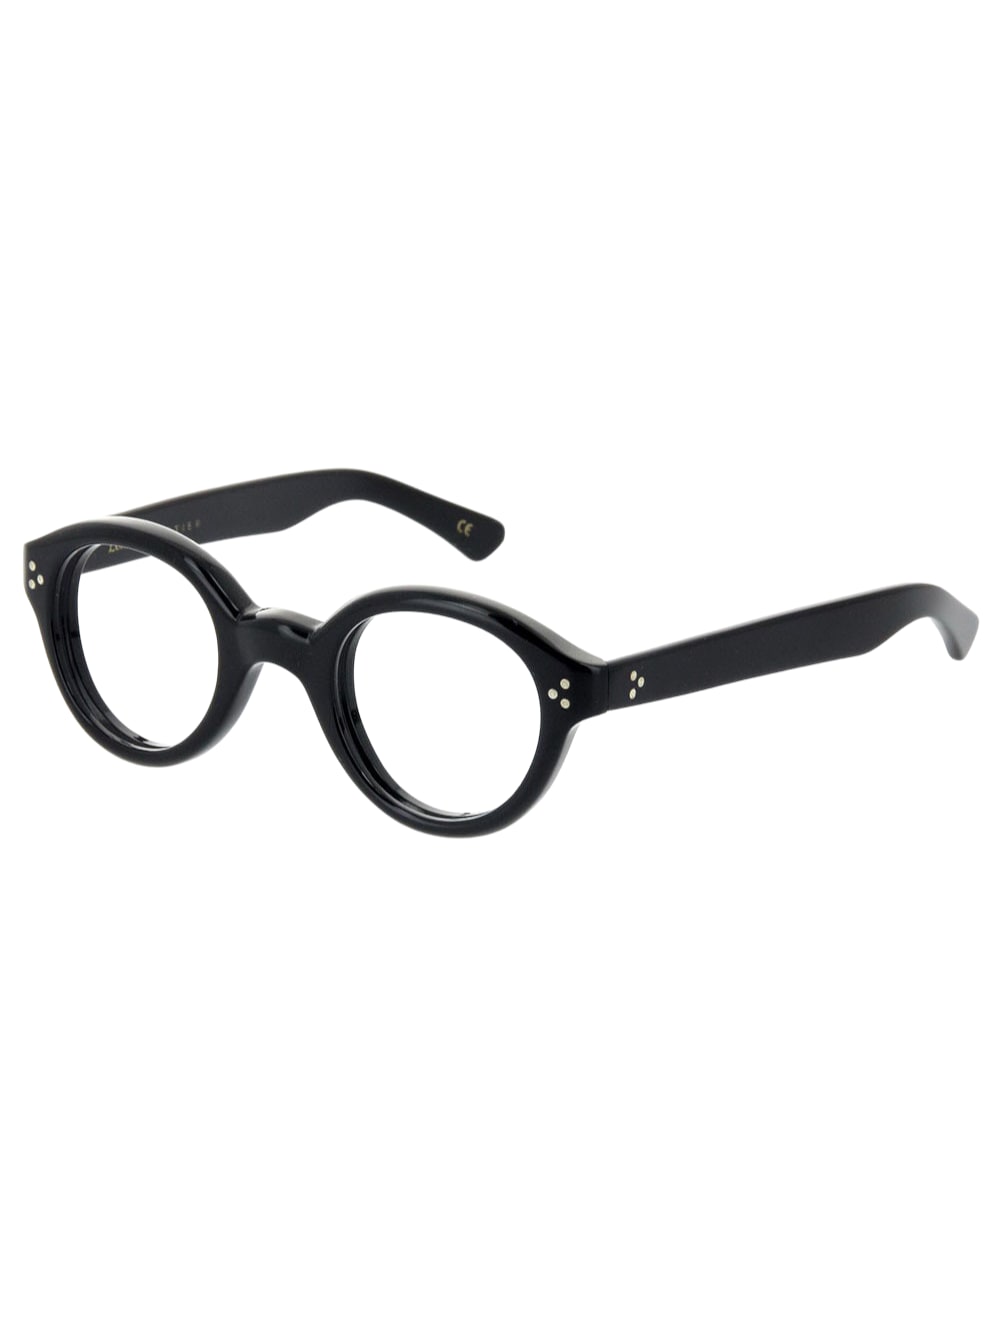 Lesca La Corbs - Black - Col.blk Glasses